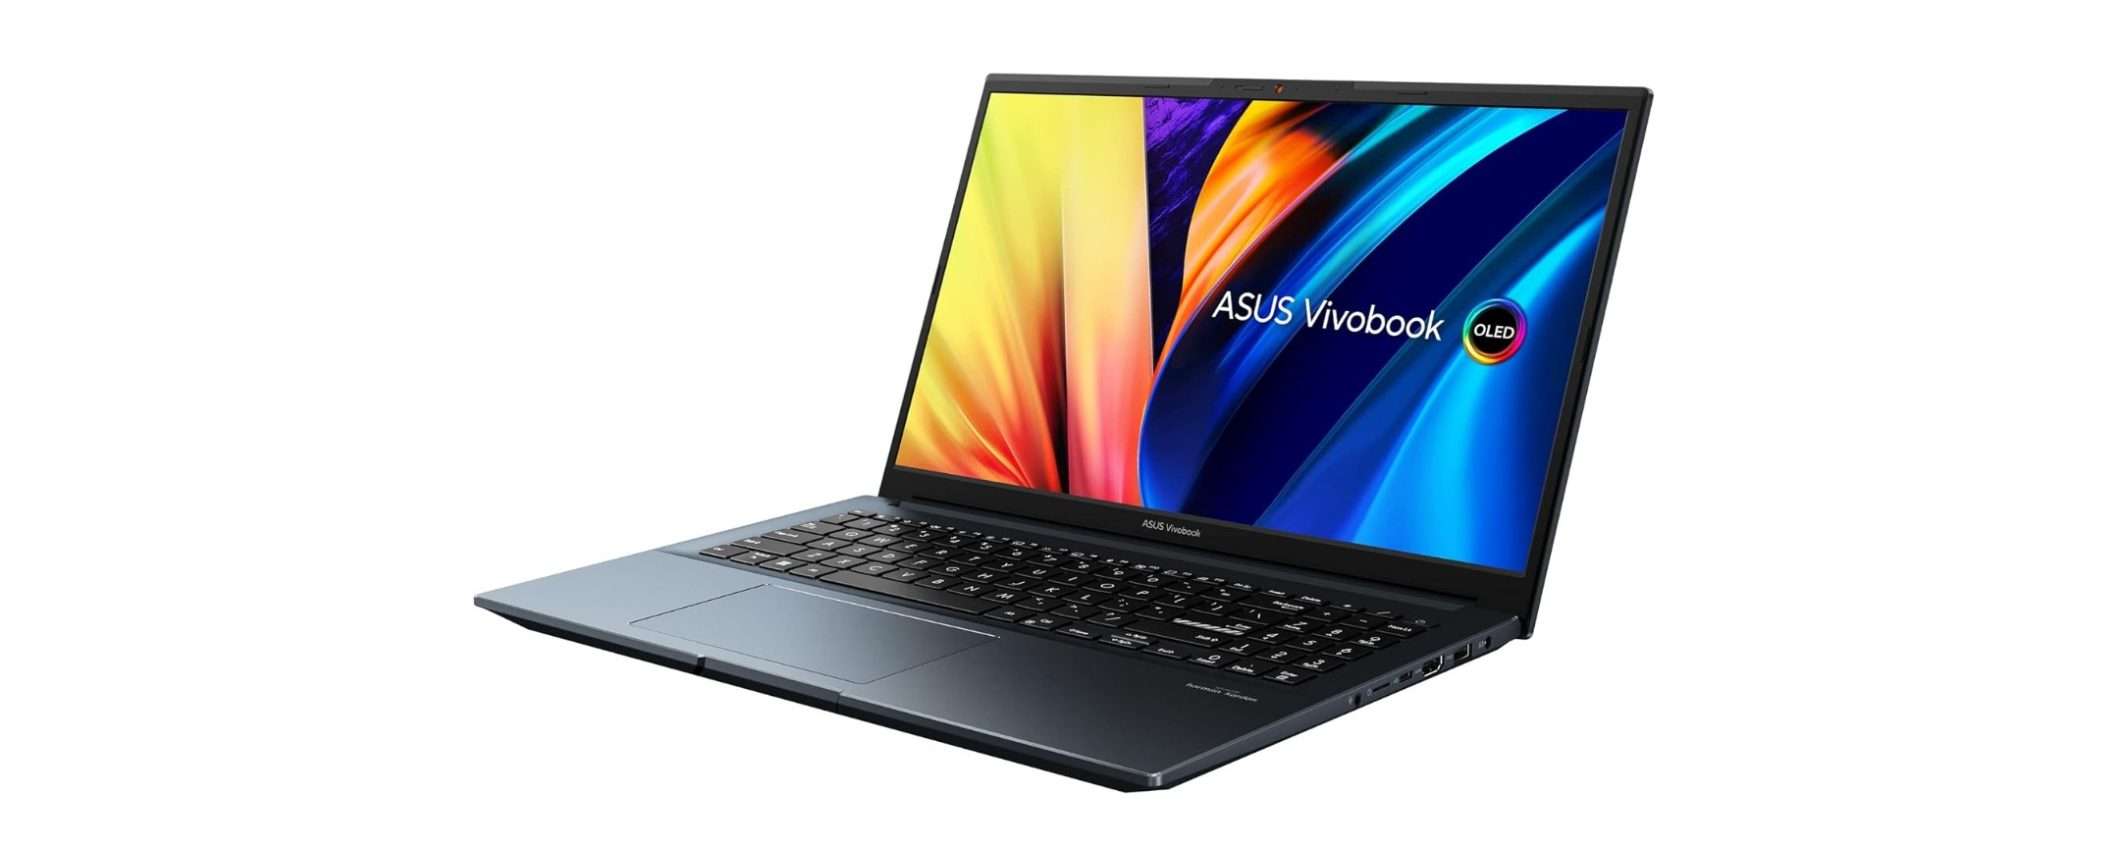 Non perderti il laptop ASUS Vivobook Pro 15 con RTX 3050 al MINIMO STORICO su Amazon!